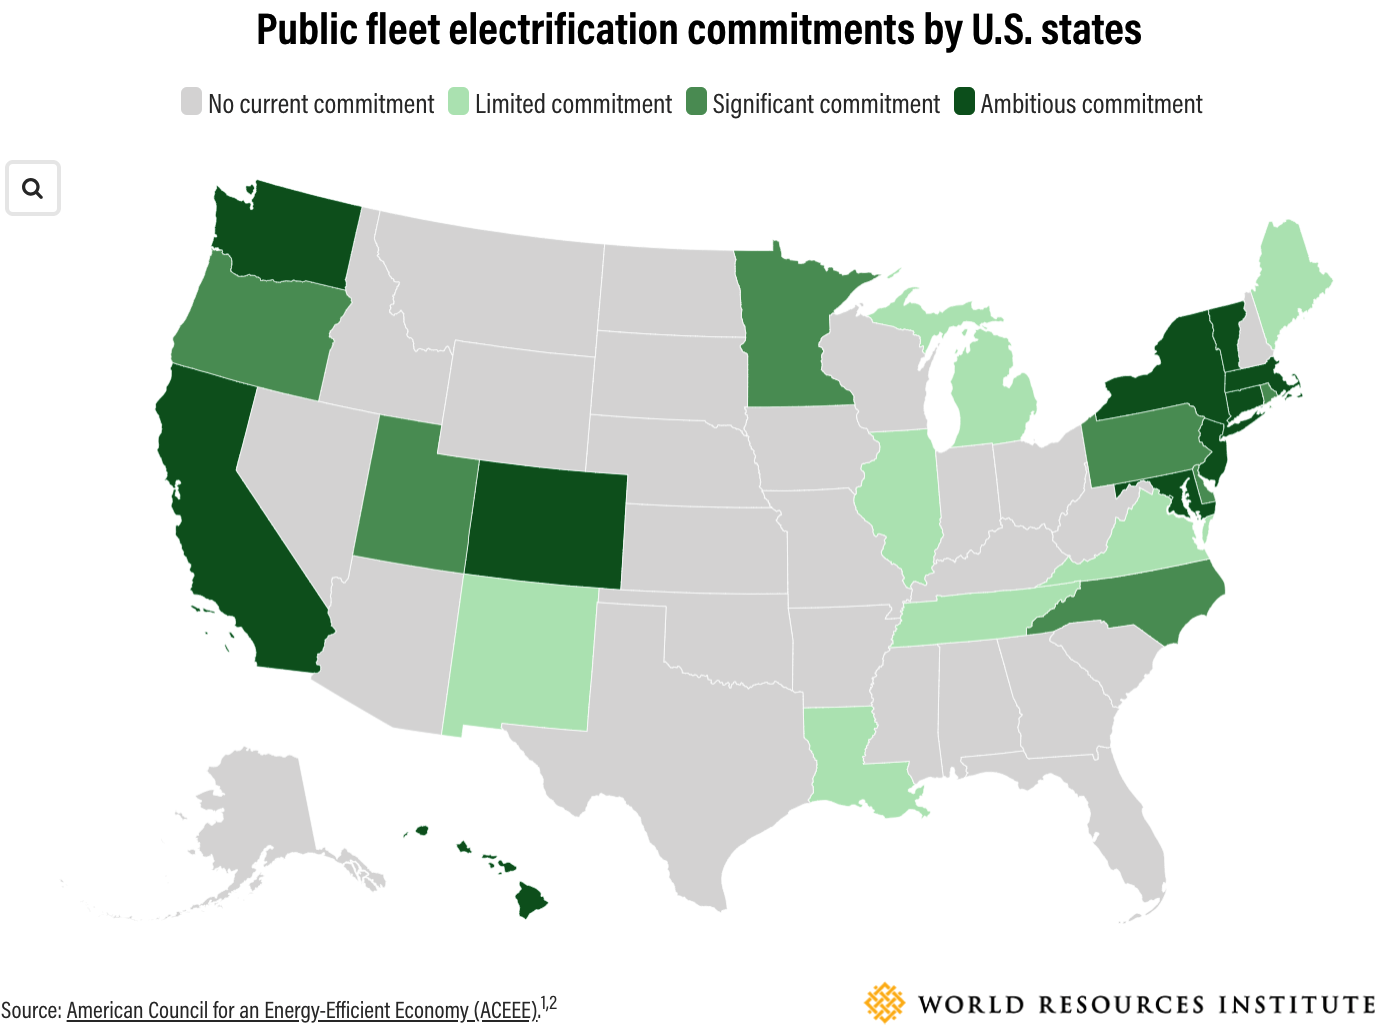 Compromisos de electrificación de flotas públicas por parte de los estados de EE. UU.